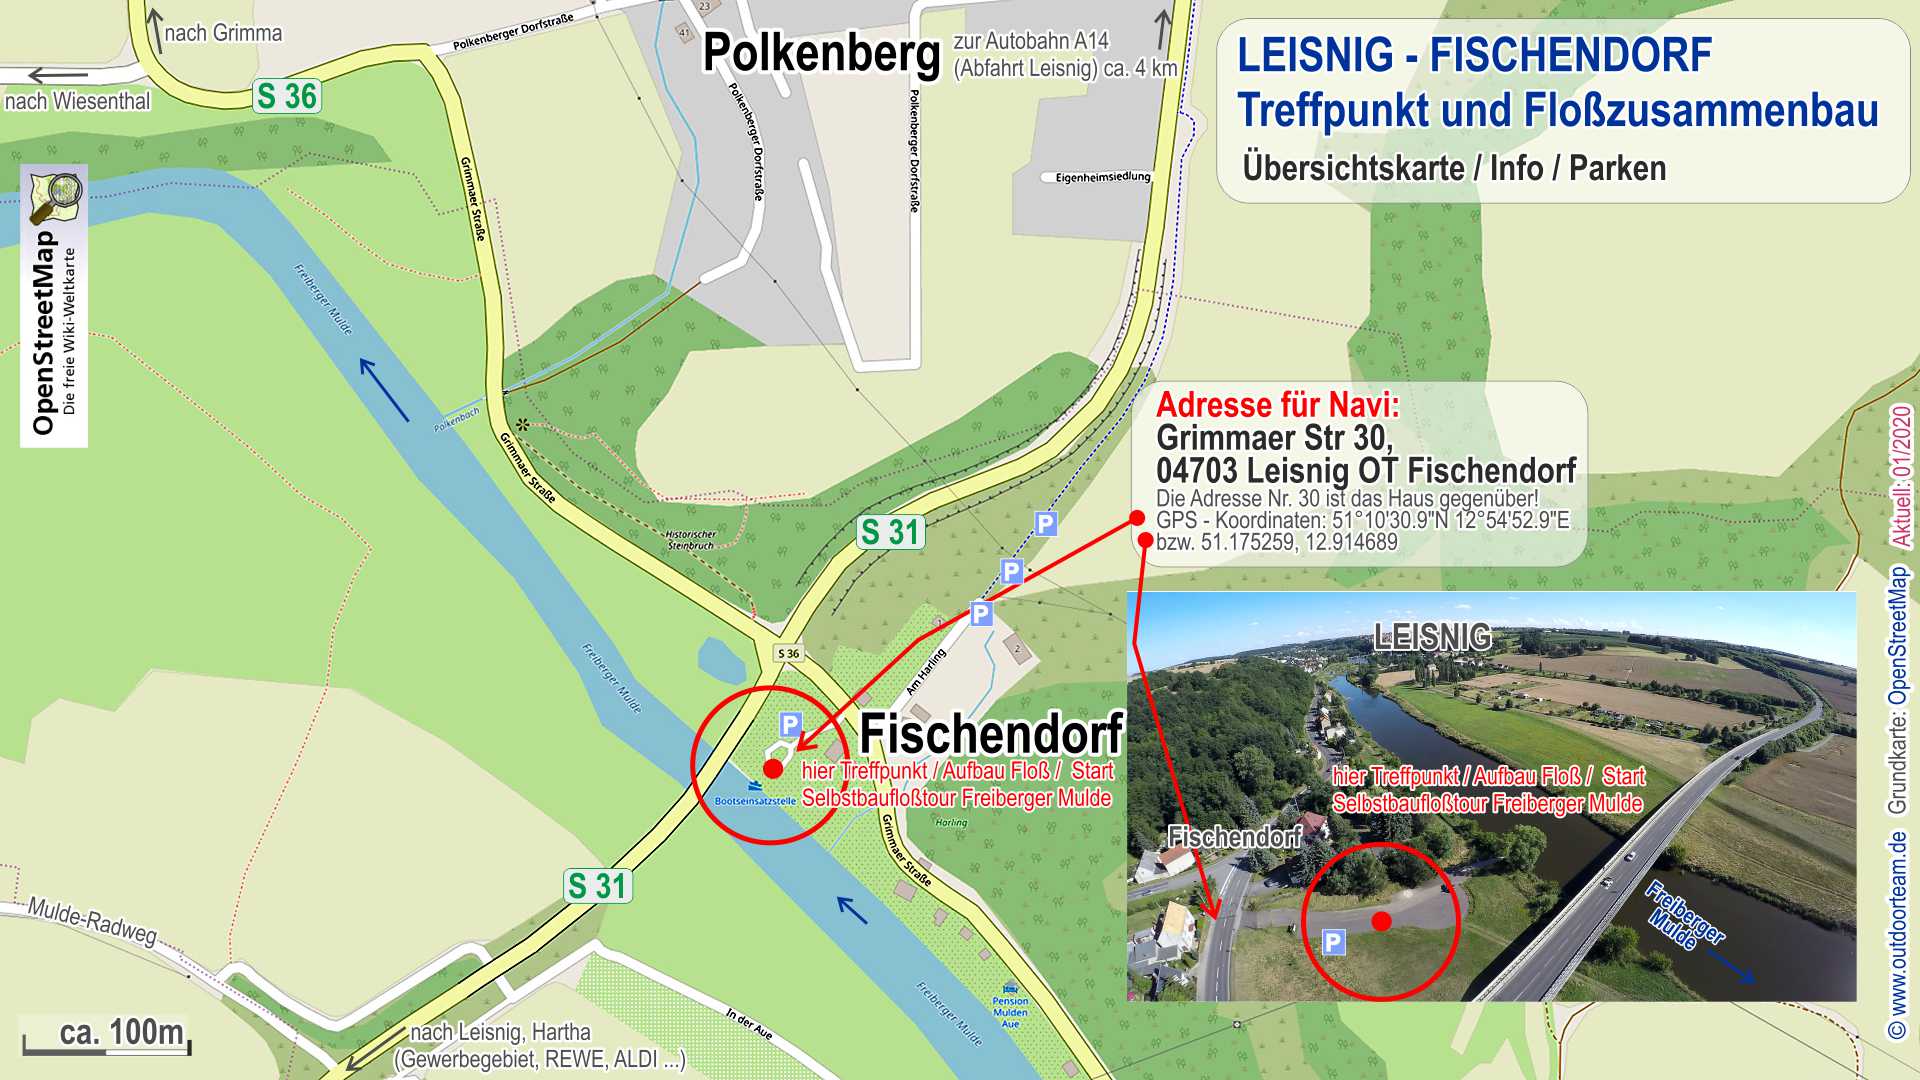 Tourstart und Treff Bootseinsatzstelle in 04703 Leisnig Fischendorf - Detailkarte bzw. genauer Ortsplan mit Navi-Adresse und Koordinaten